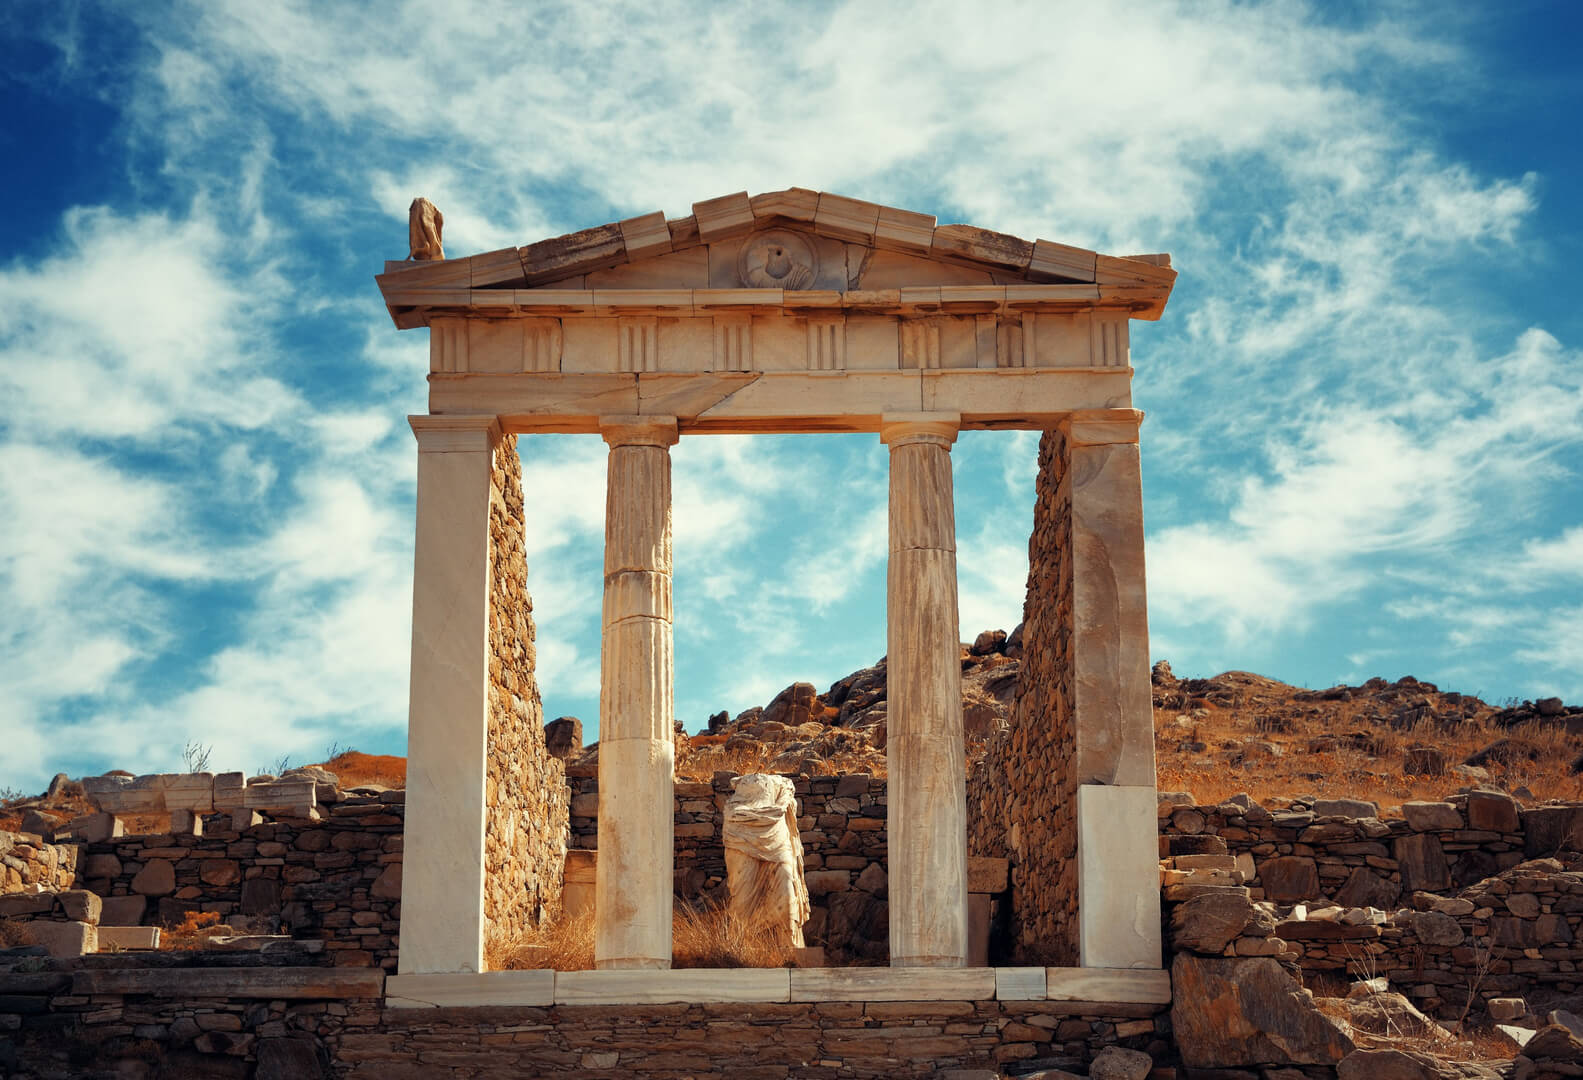 Tempio in rovine storiche nell'isola di Delos vicino a Mikonos, Grecia.
